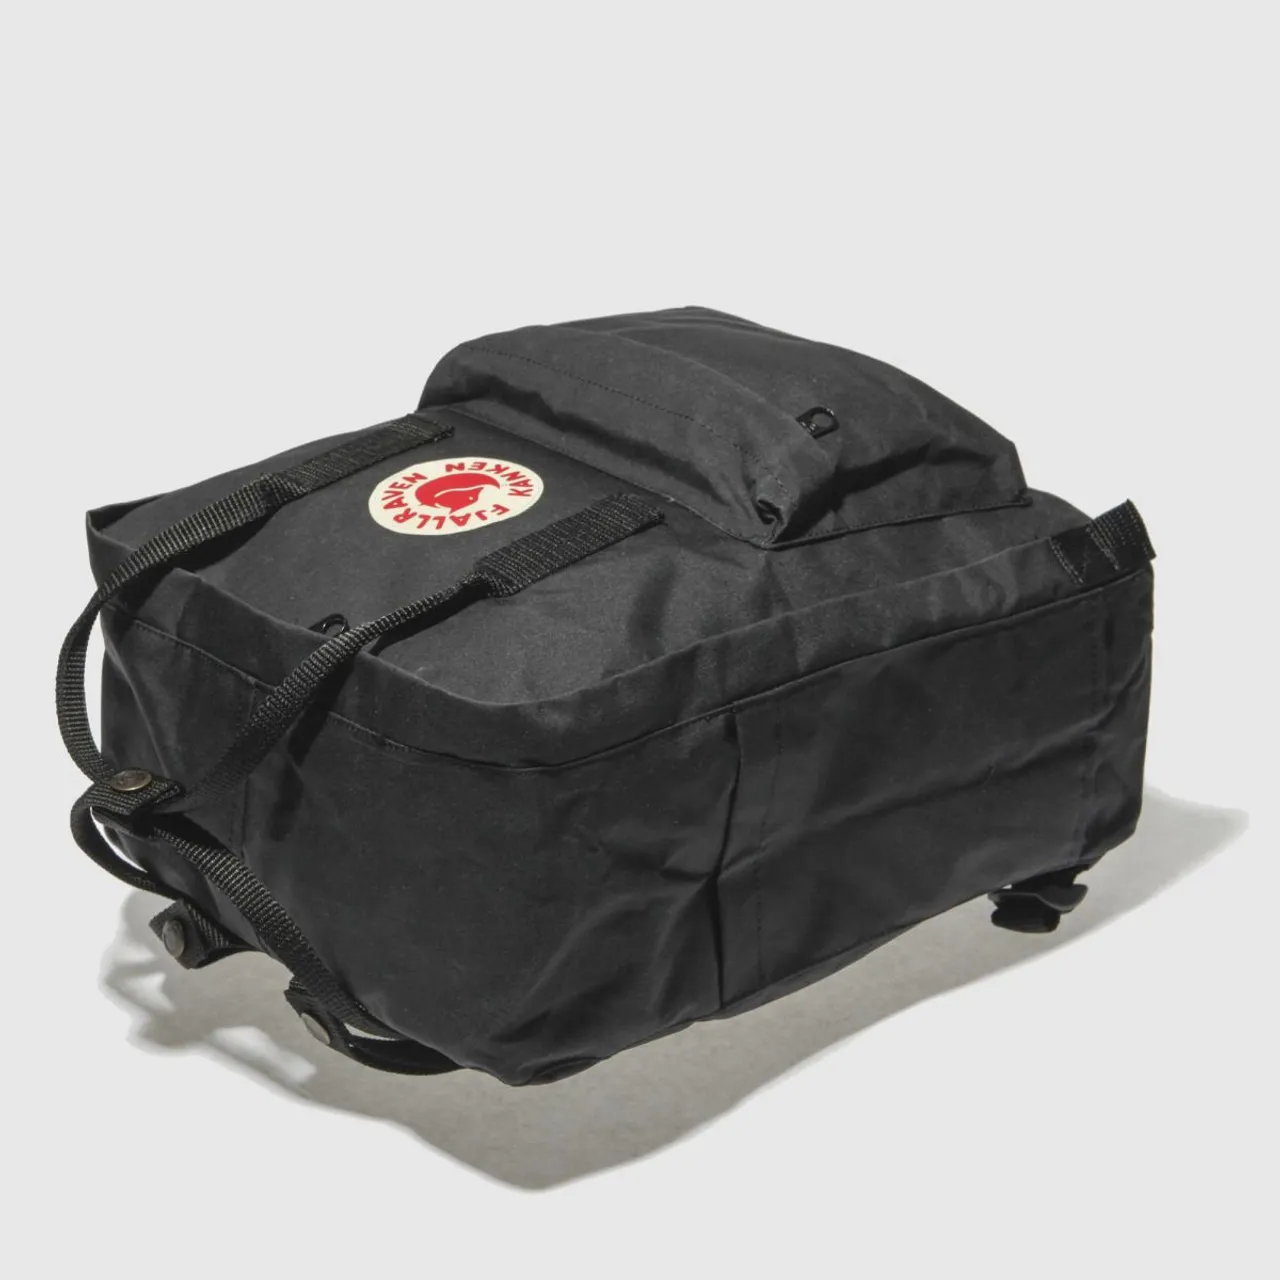 Fjallraven Black Kanken Backpack, Size: One Size